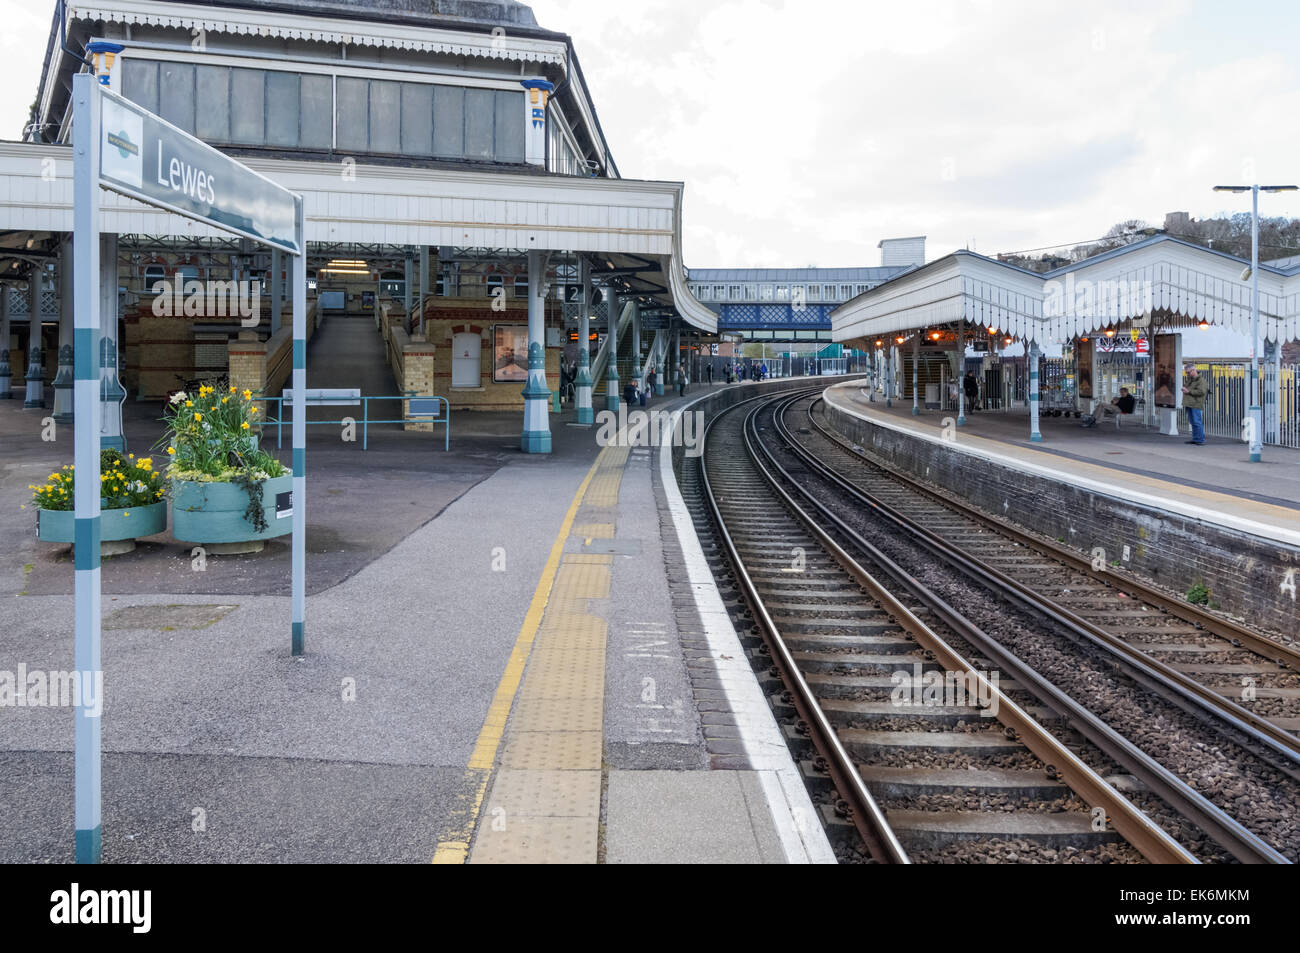 La gare de Lewes Lewes, East Sussex England Royaume-Uni UK Banque D'Images